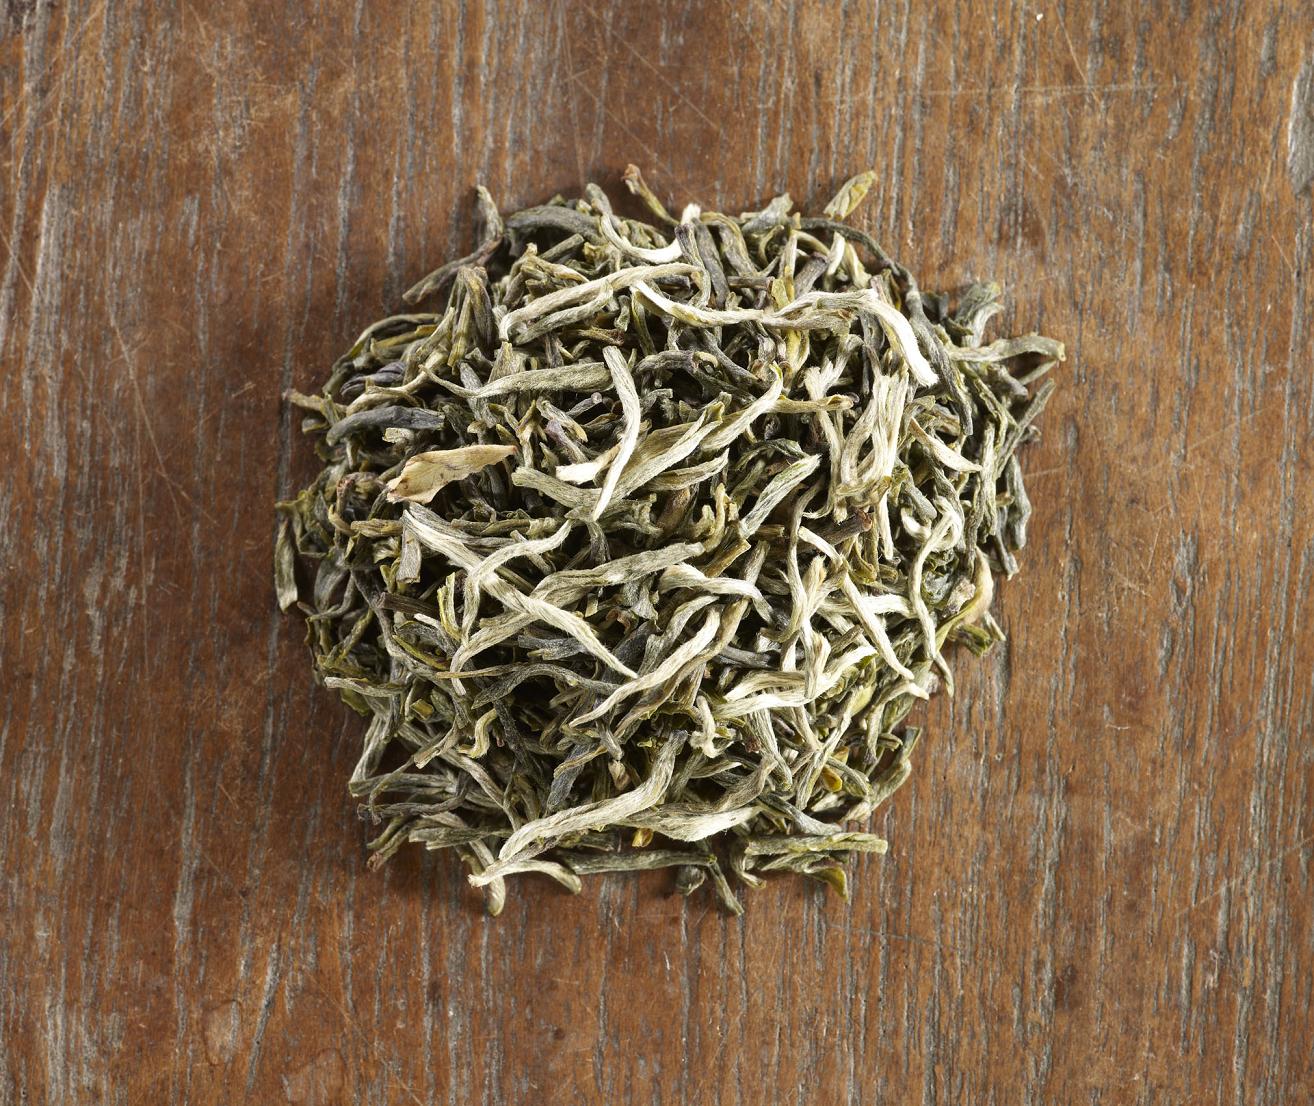 Yunnan Green tea